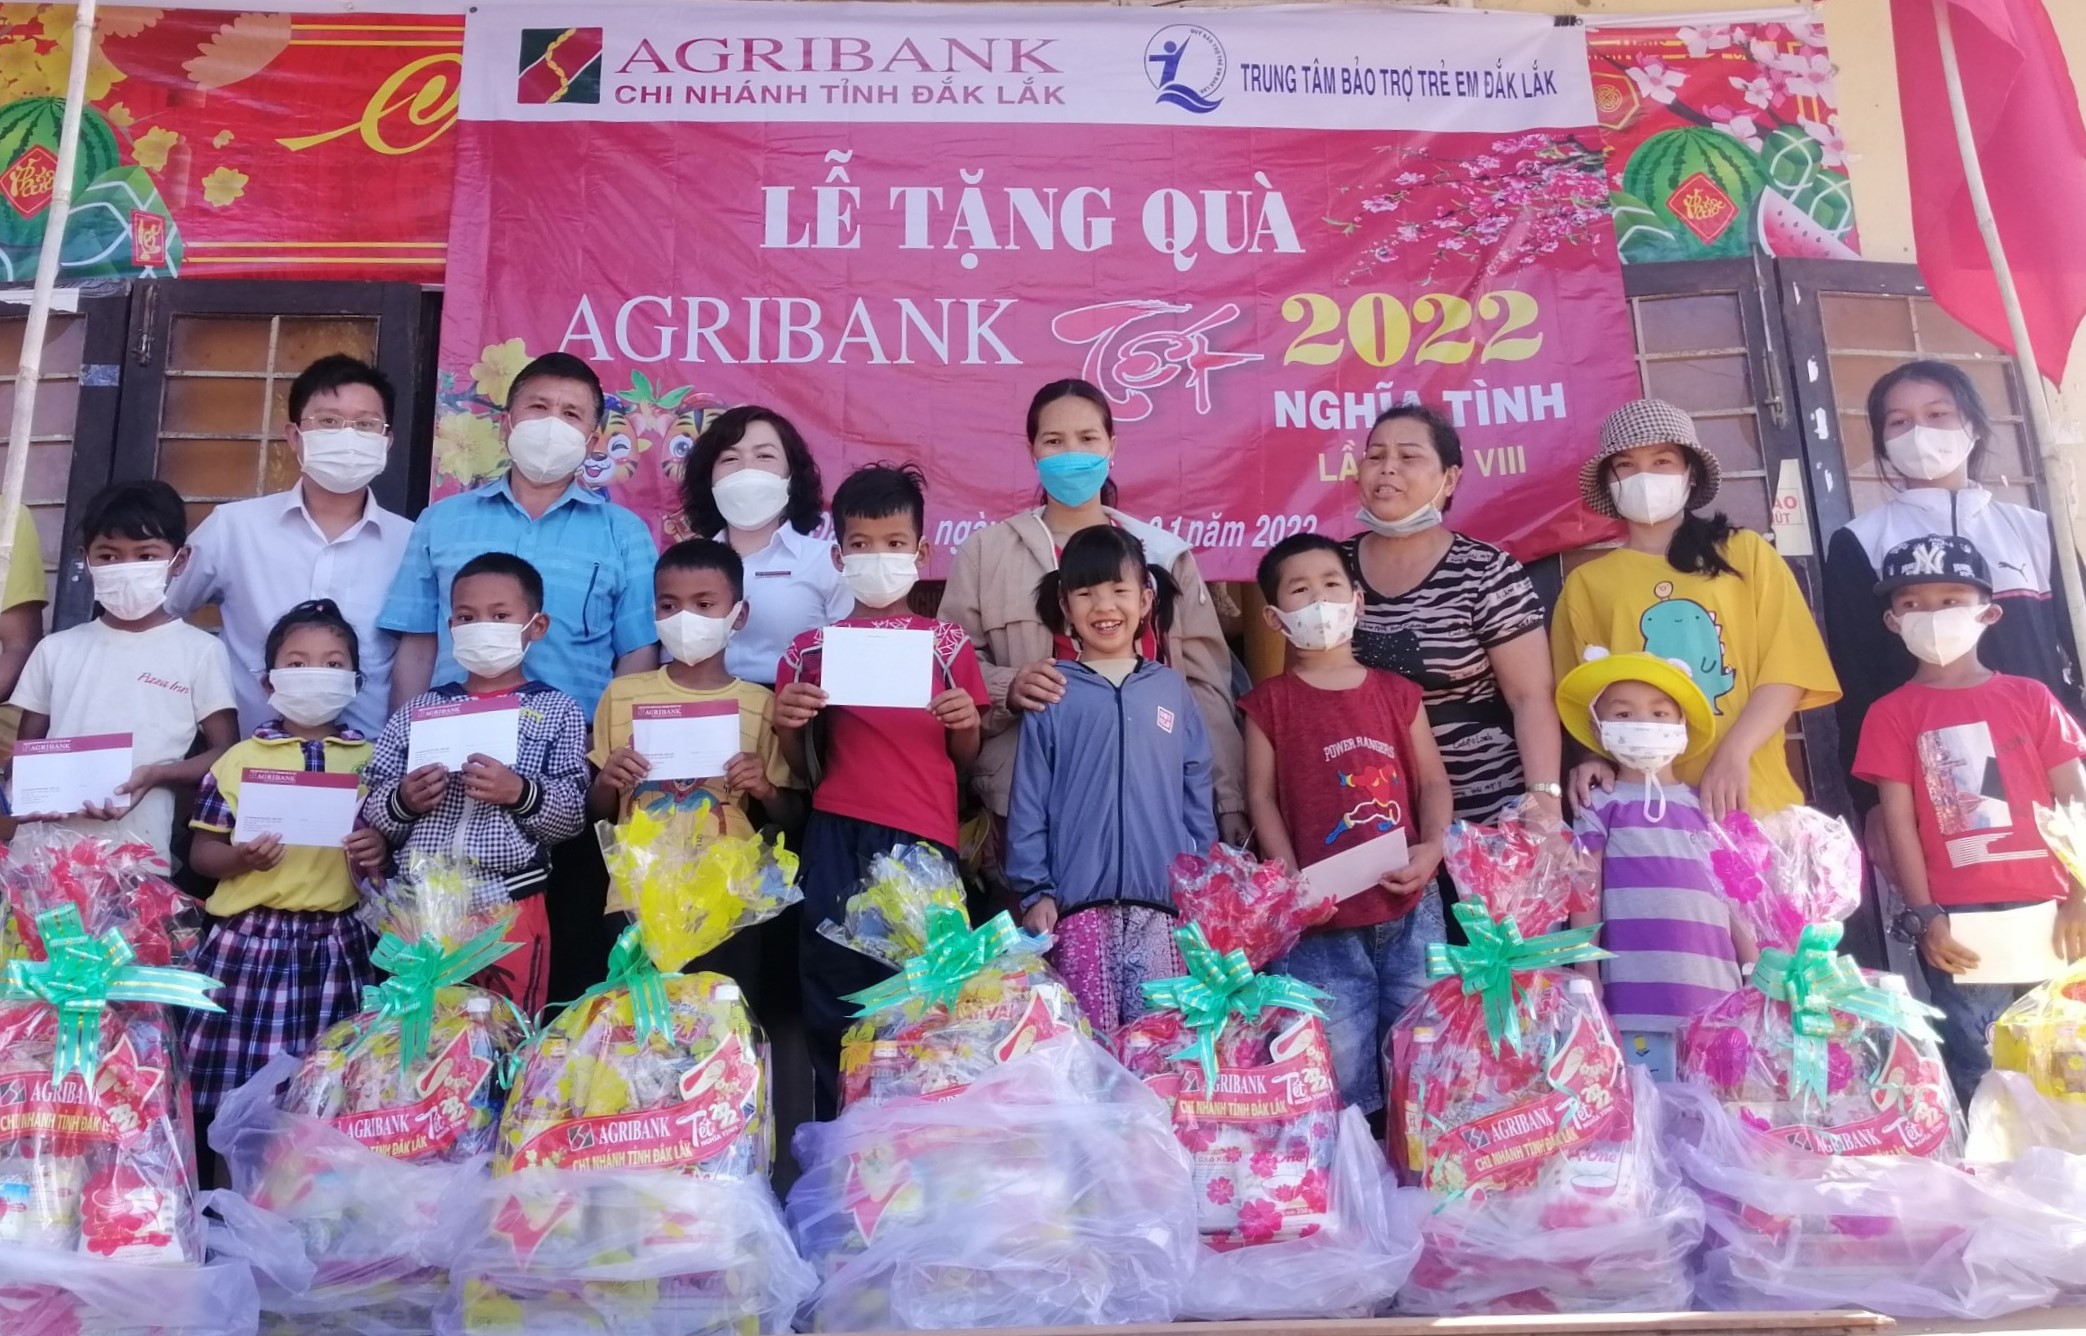 Khởi động chương trình “Agribank Đắk Lắk - Tết nghĩa tình" lần thứ 9, năm 2023